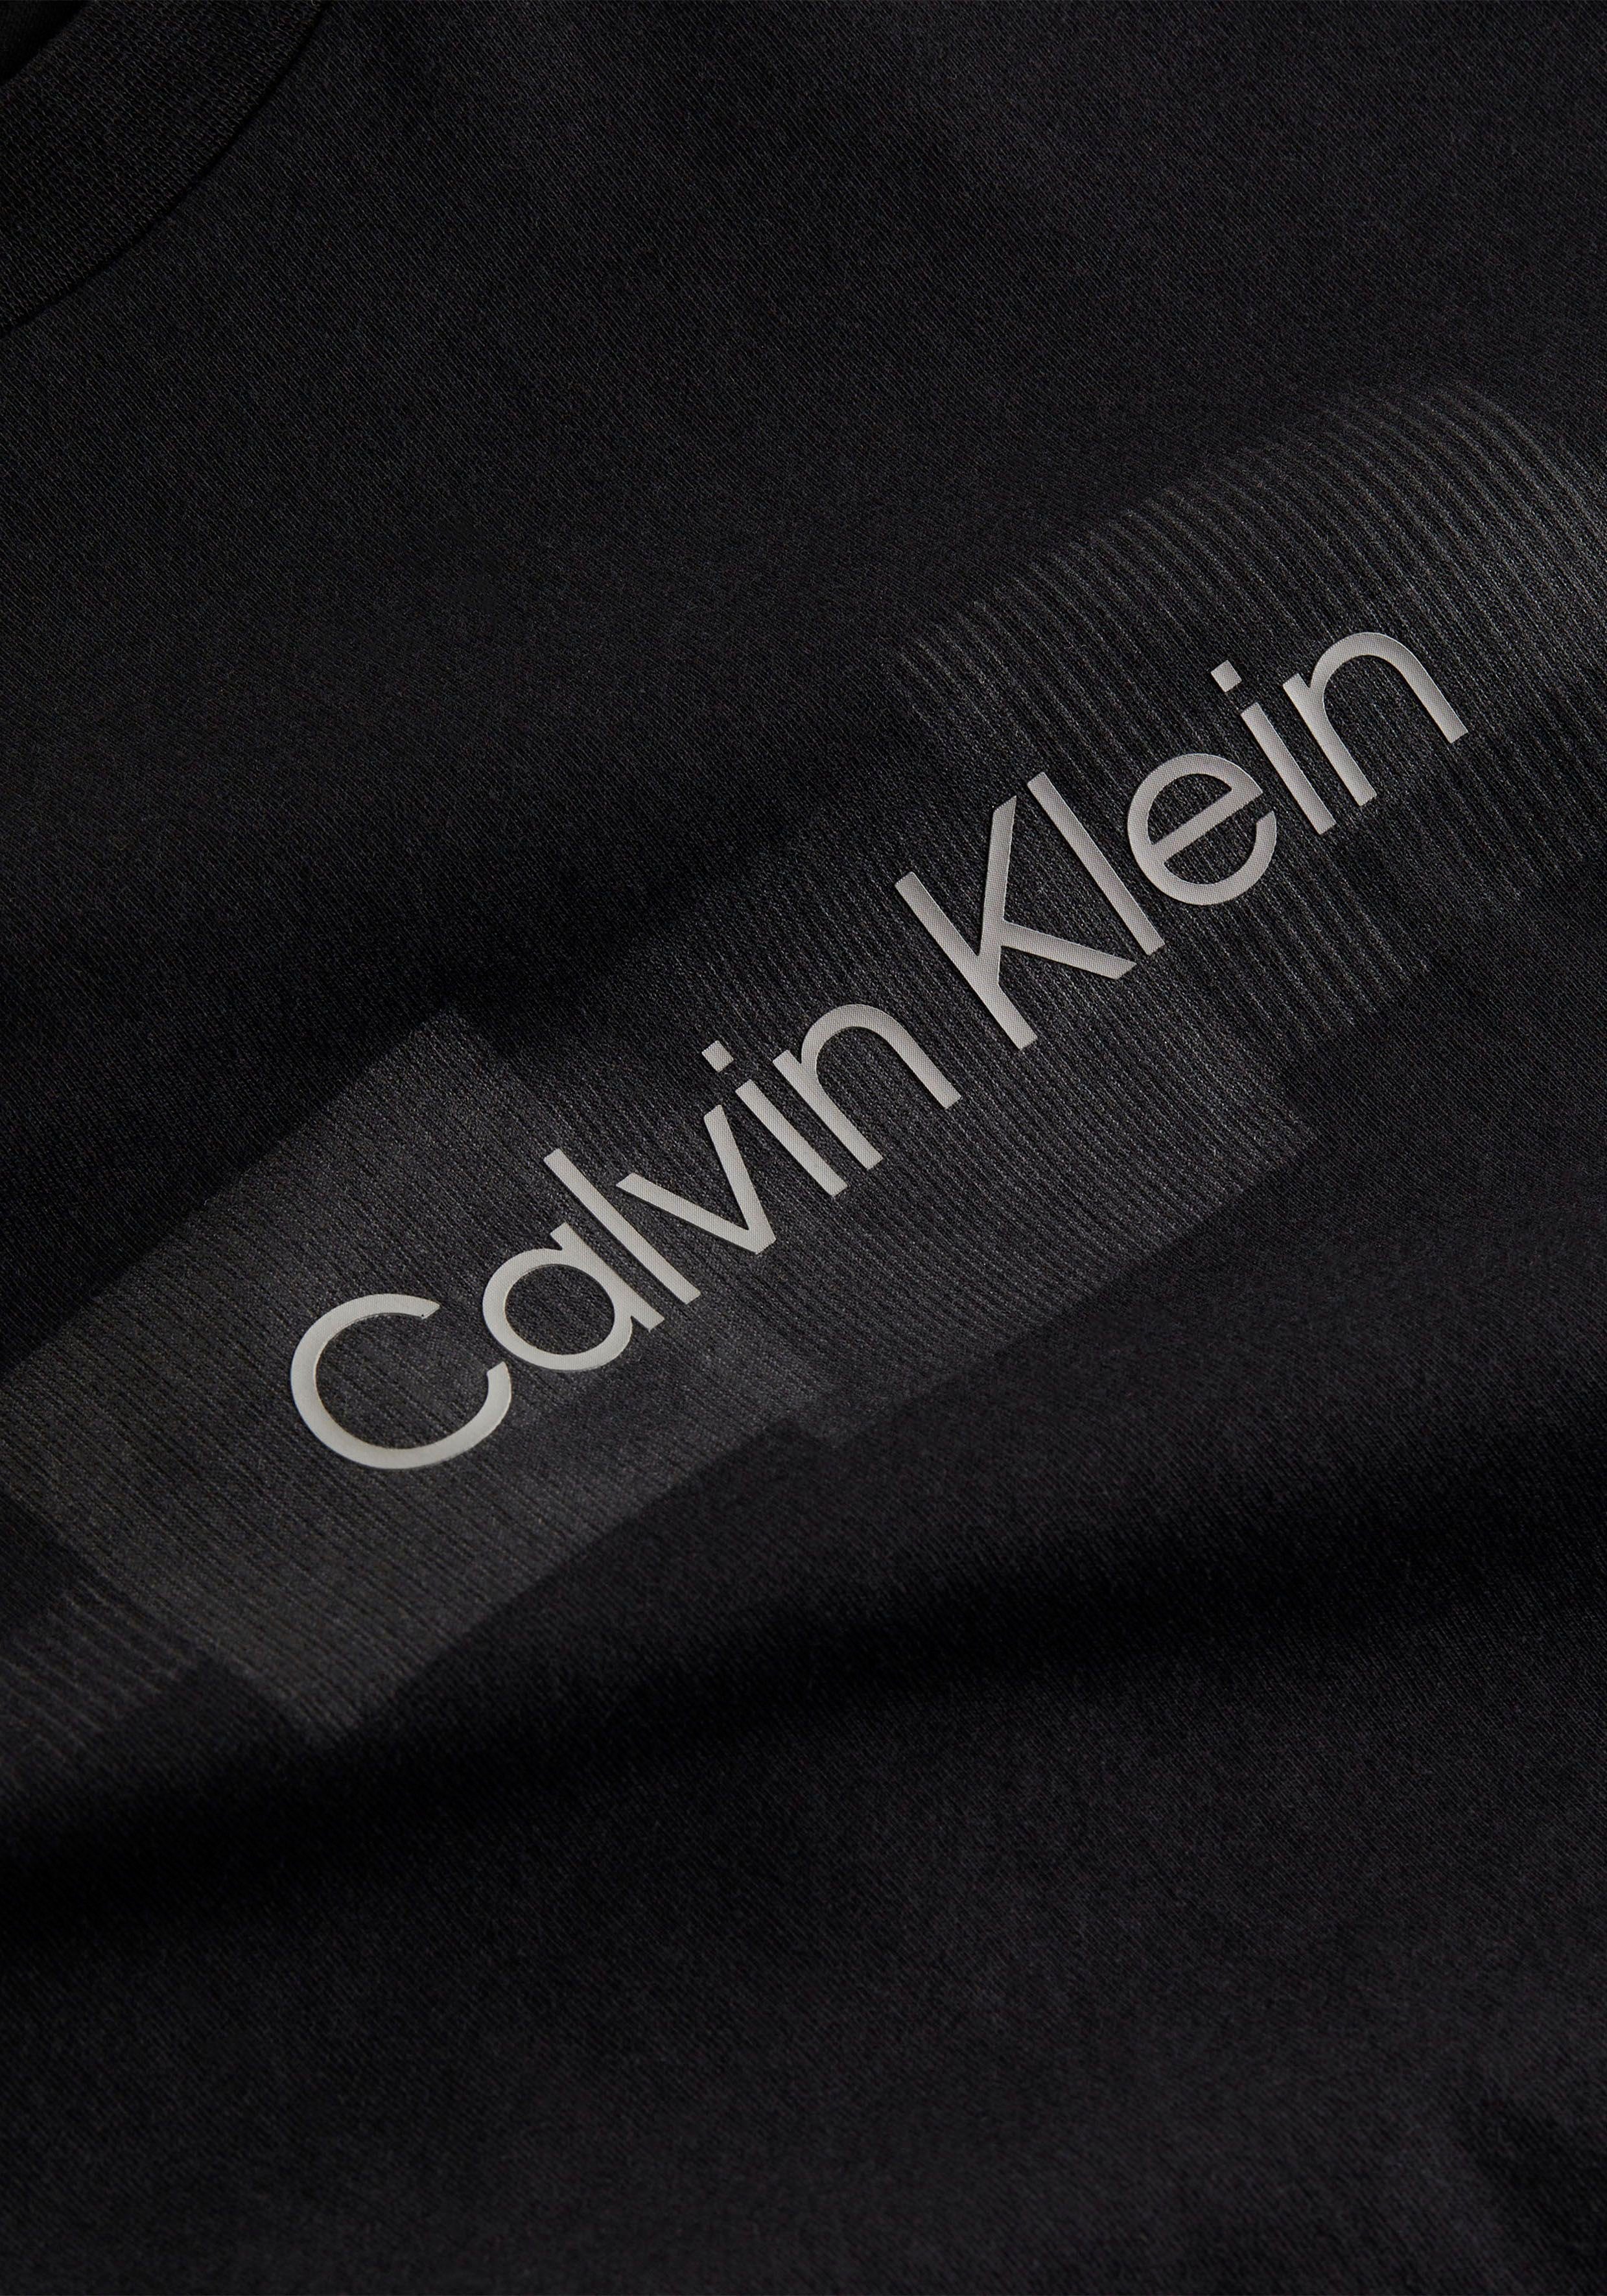 Baumwolle T-SHIRT aus STRIPED LOGO Black reiner BOX T-Shirt Ck Klein Calvin